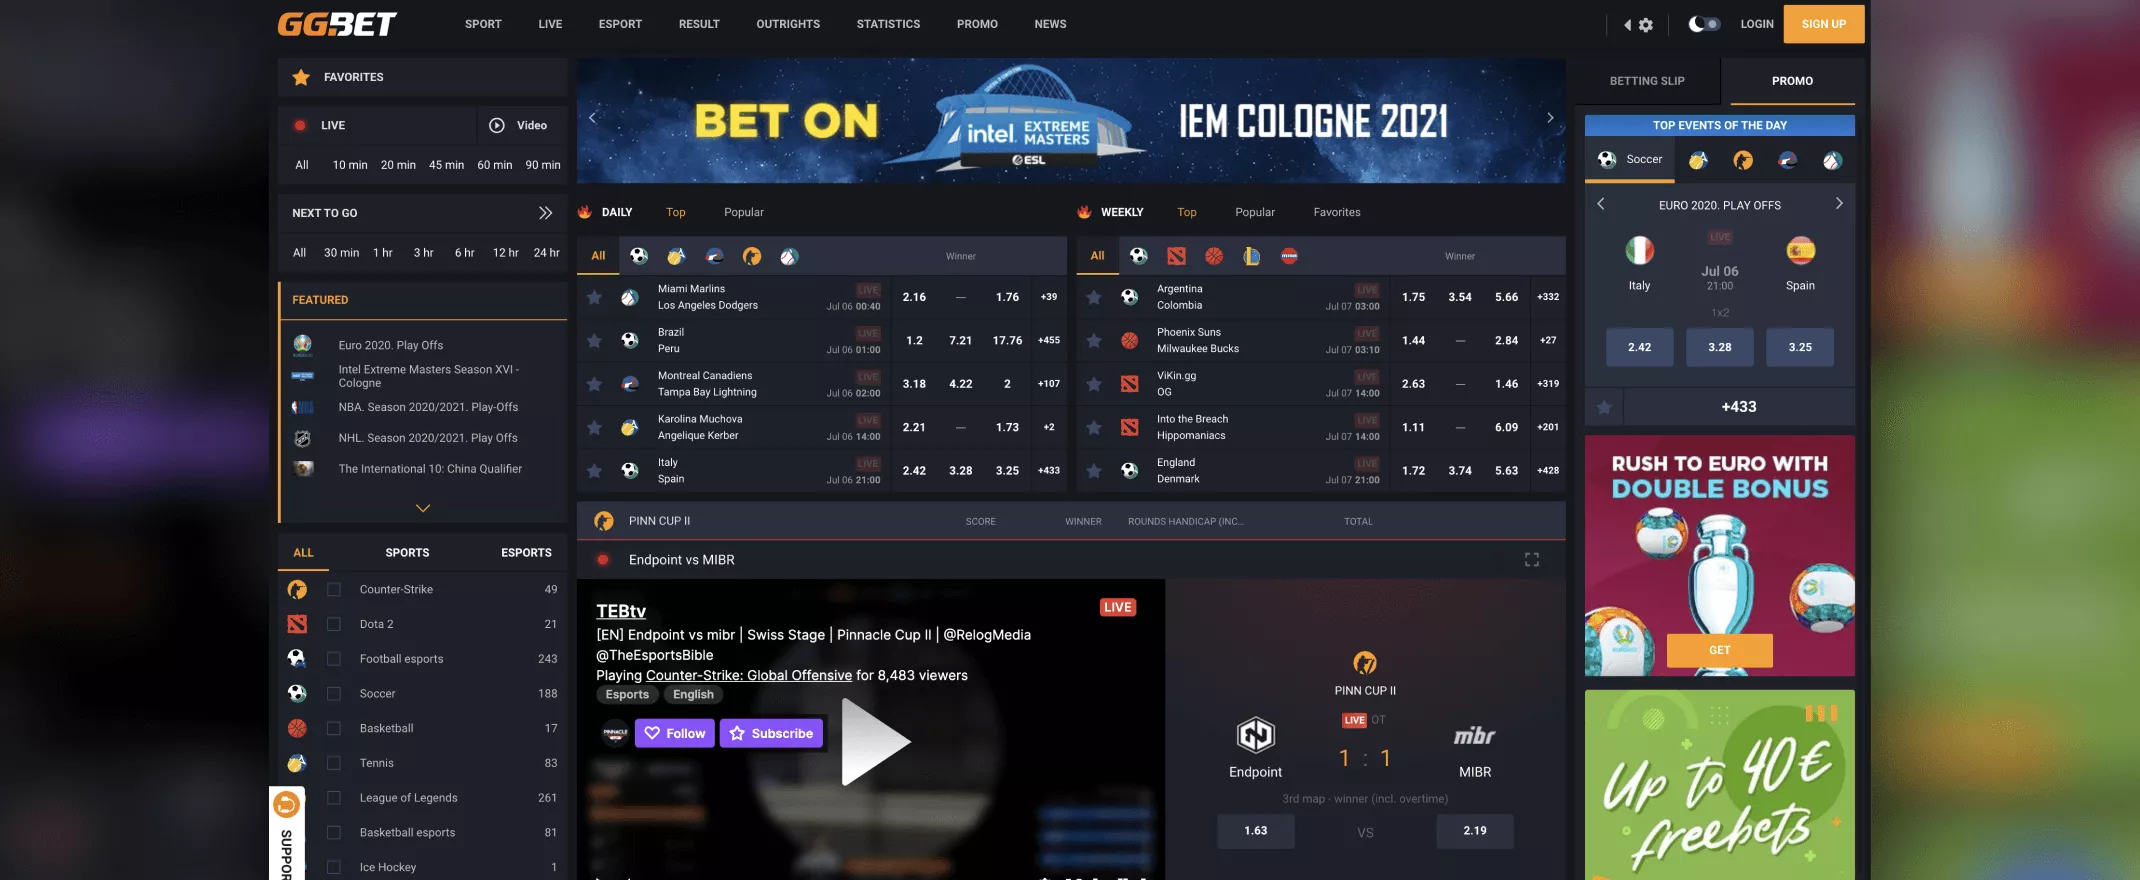 GG.bet games screenshot